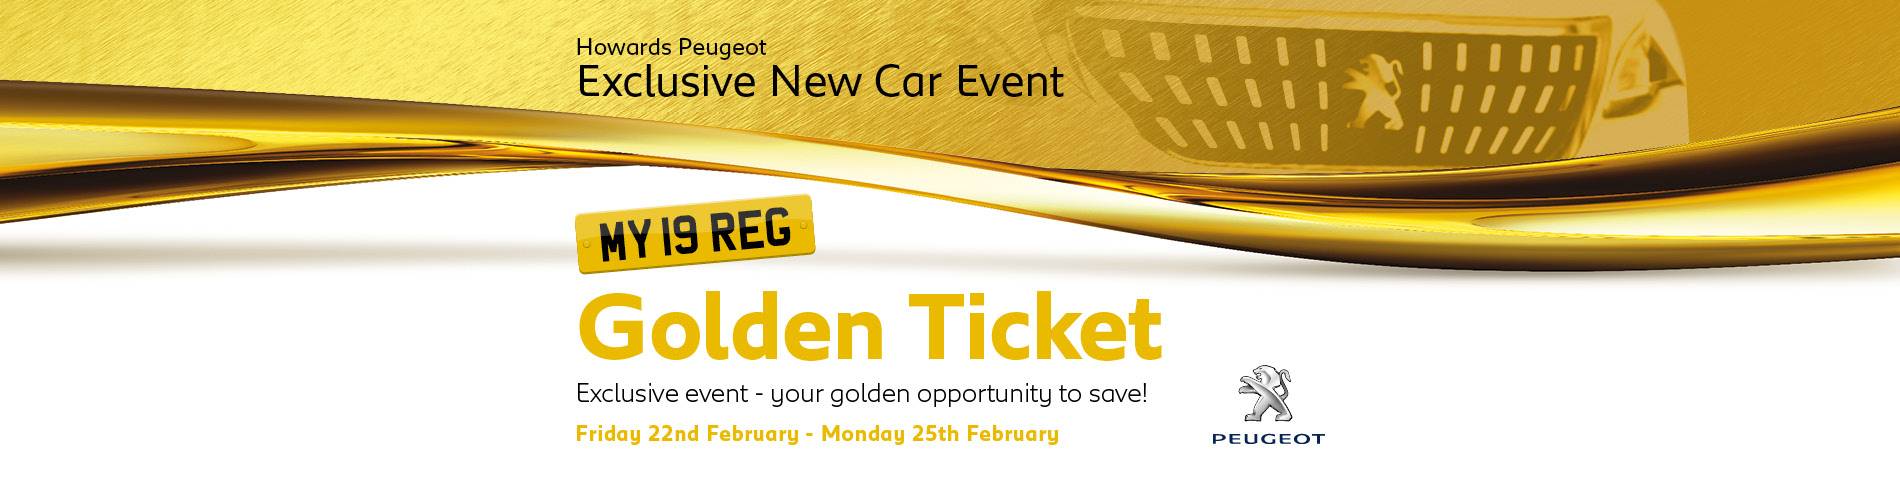 Peugeot Golden Ticket